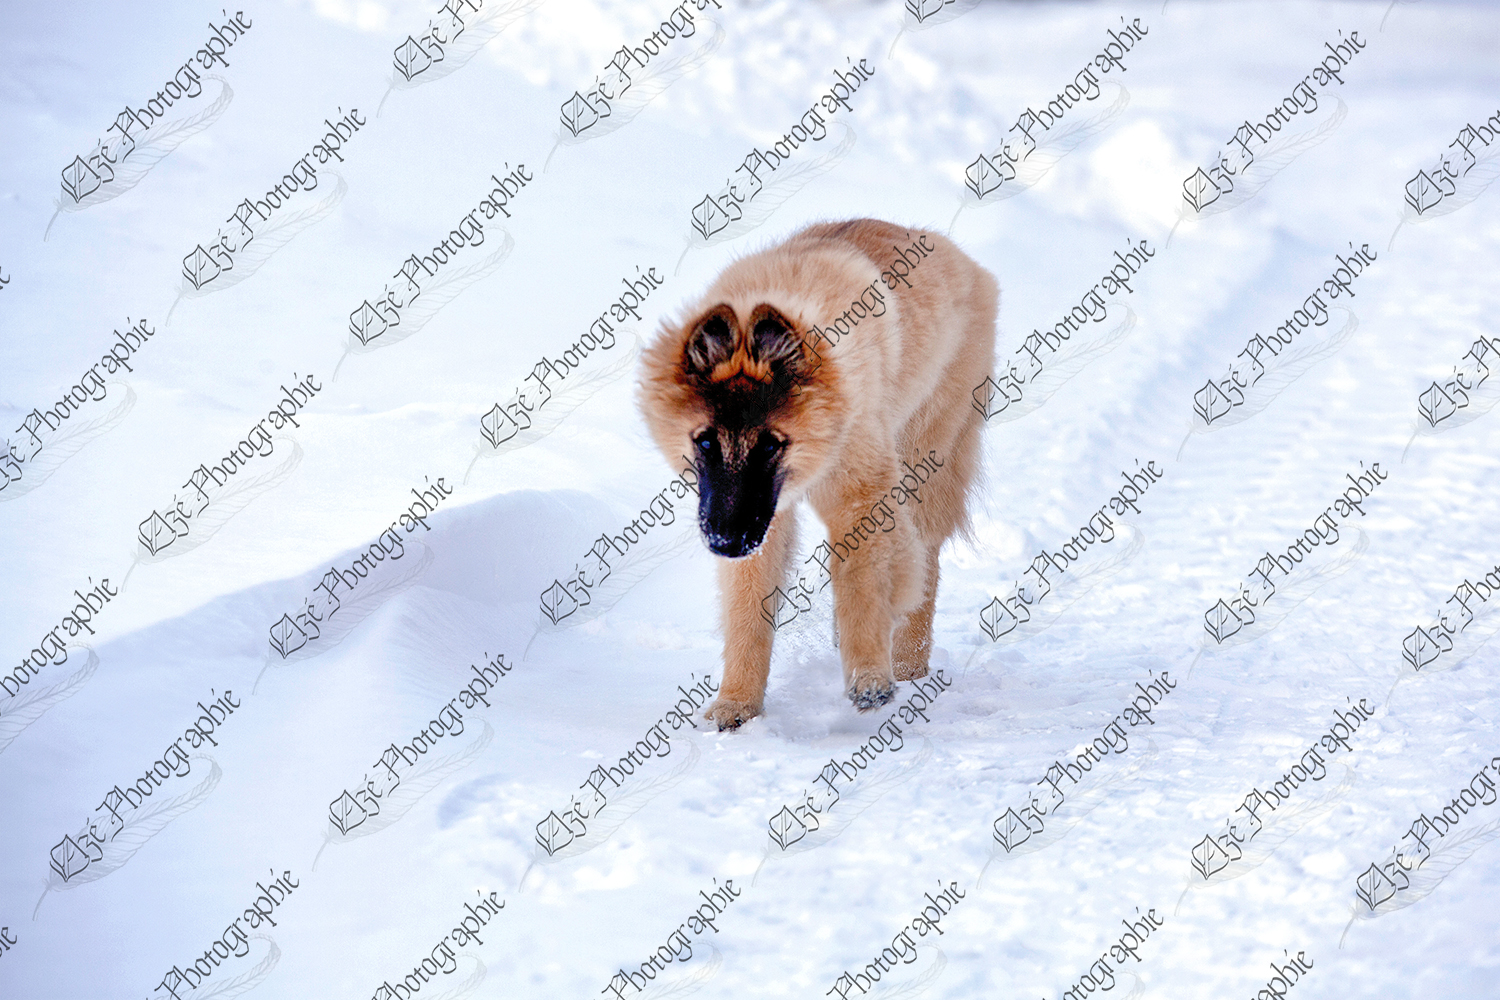 elze_photo_5911_berger_chien_marche_winter_dog